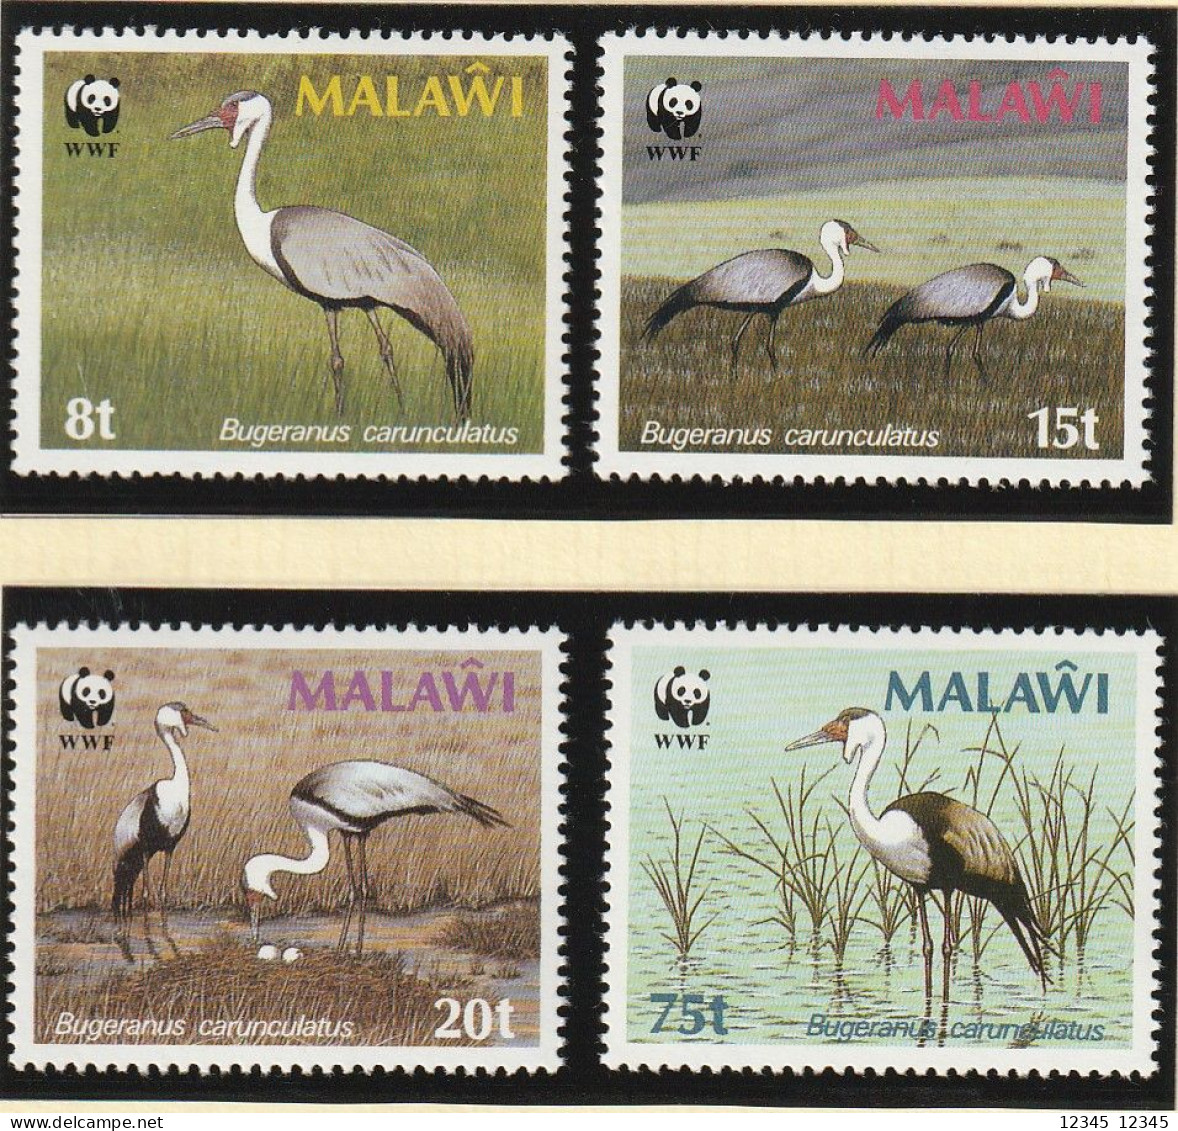 Malawi 1987, Postfris MNH, WWF, The Clunky Crane, Birds - Malawi (1964-...)